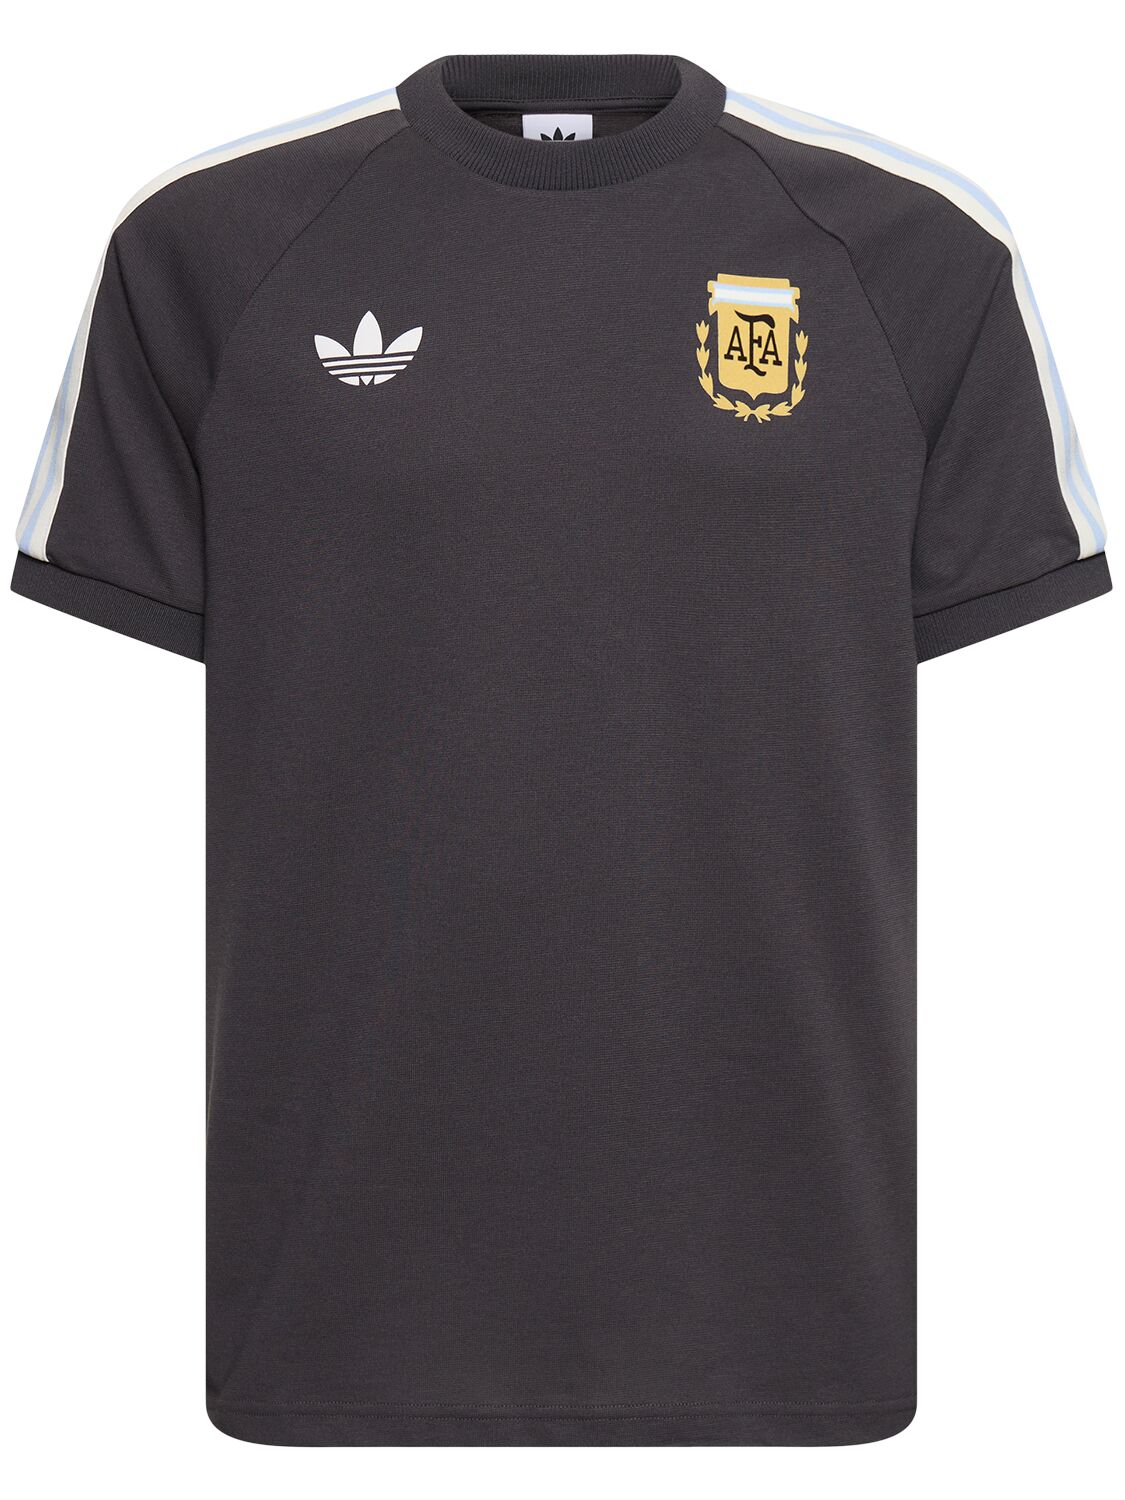 Adidas Originals Argentina T-shirt In Black